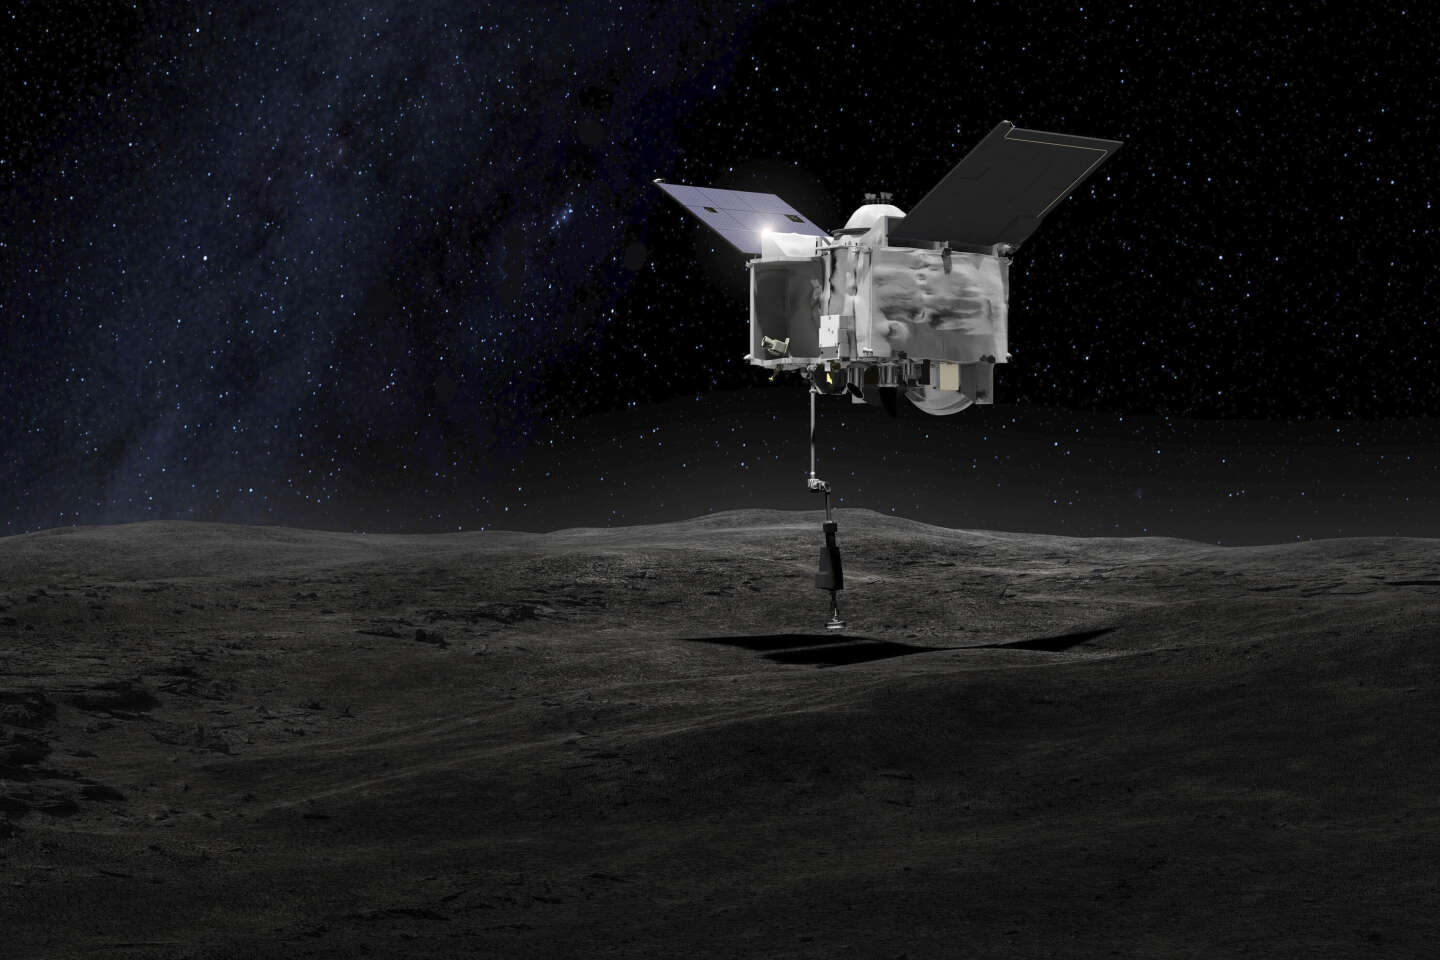 Kapsuła zawierająca próbki asteroid pobrane przez sondę wylądowała